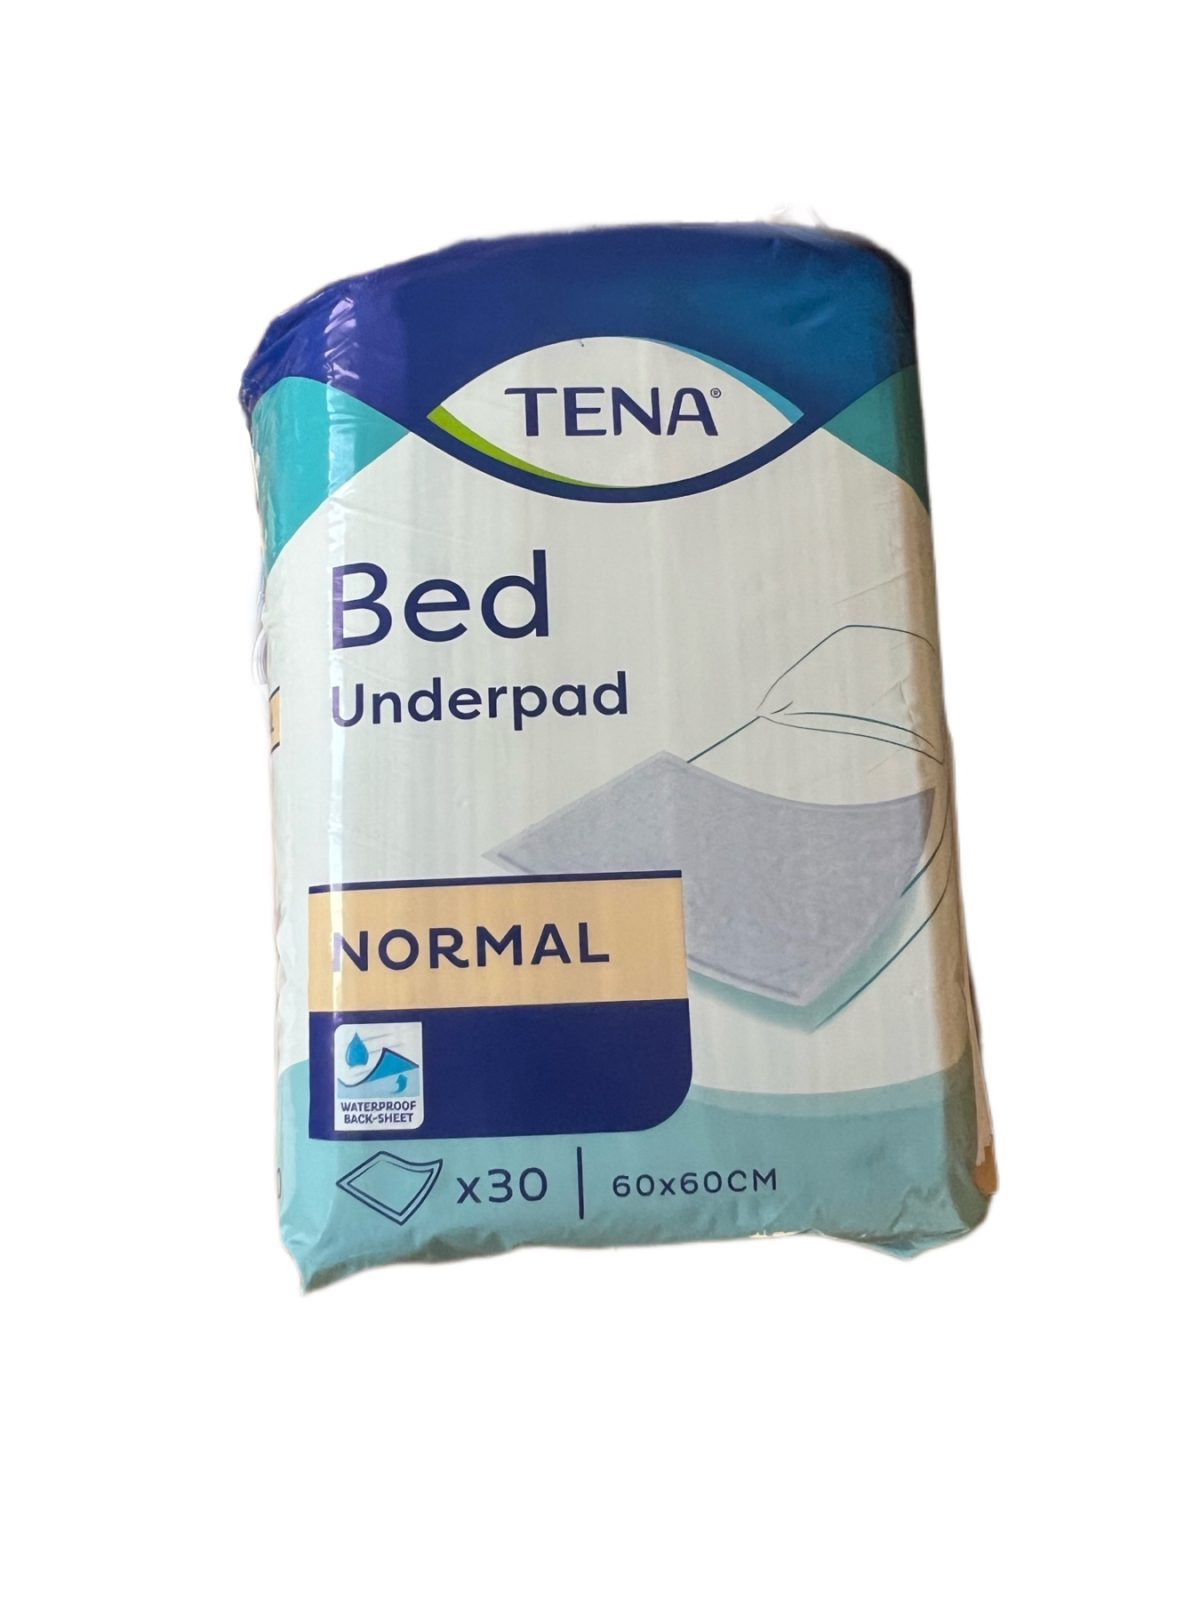 Տենա սավան ներծծող Tena Bed Underpad Normal Тена простыни впитывающие